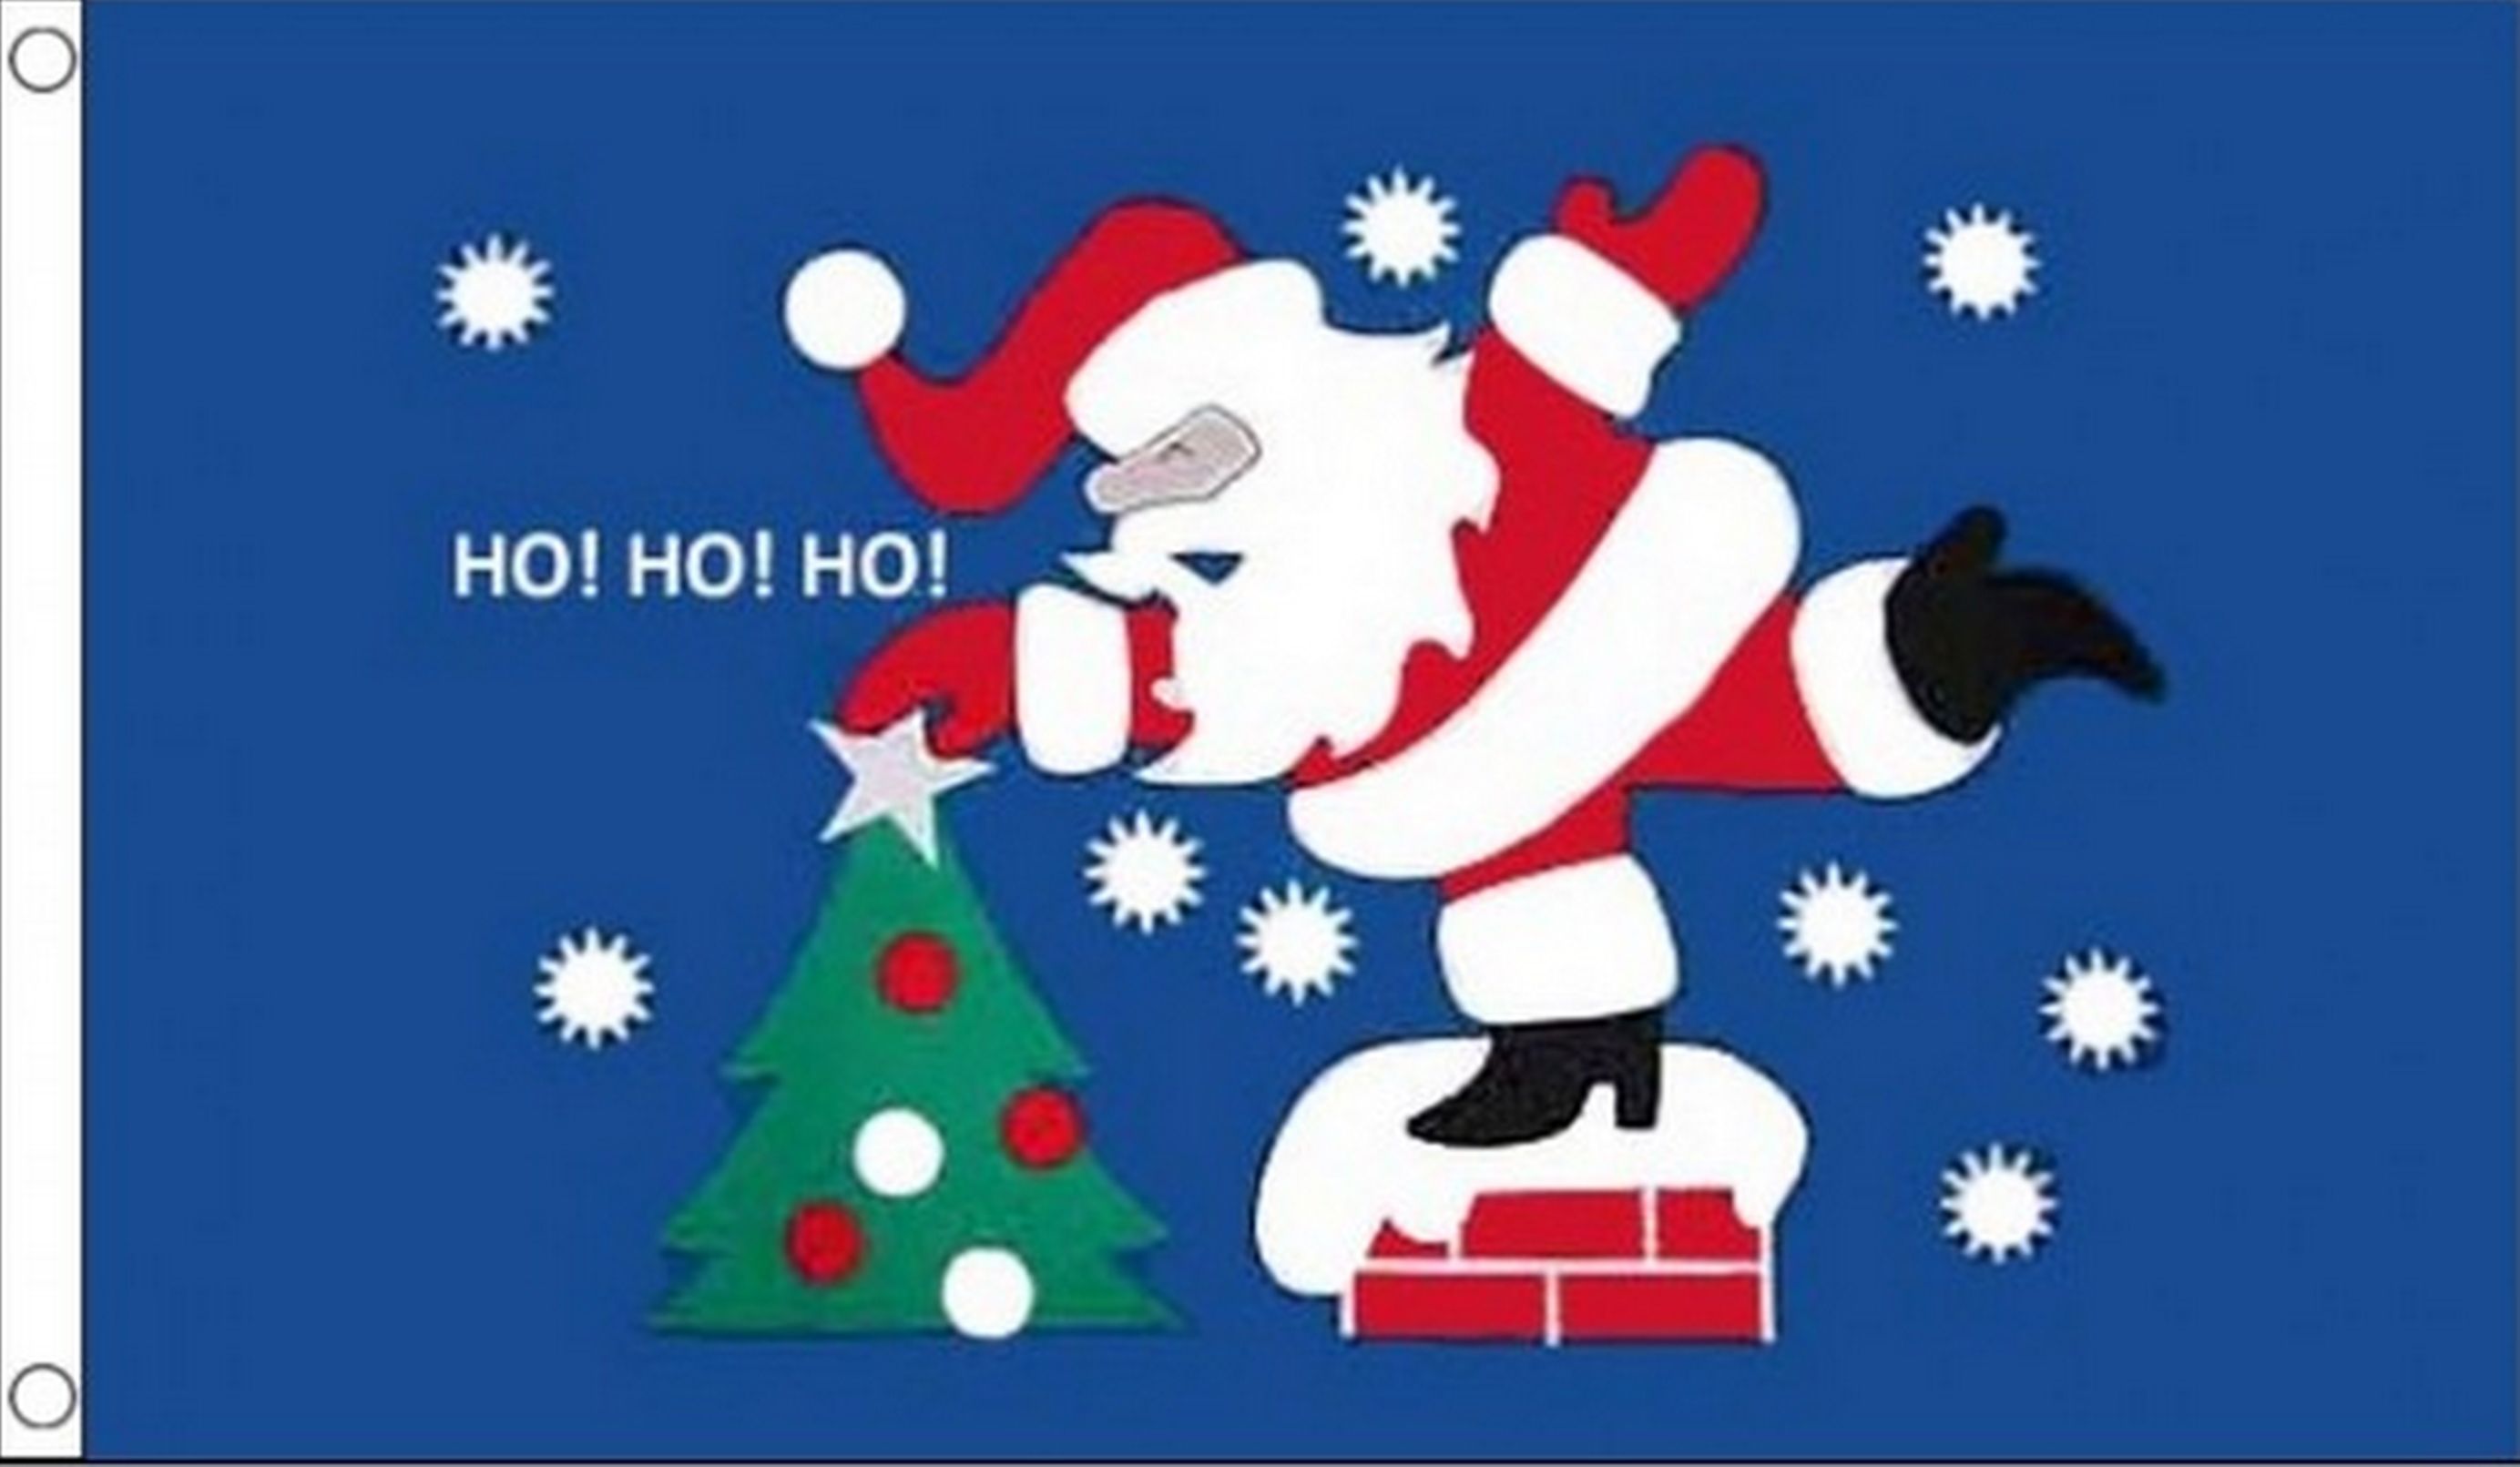 SANTA CHRISTMAS HO HO HO - 5X3 FLAG